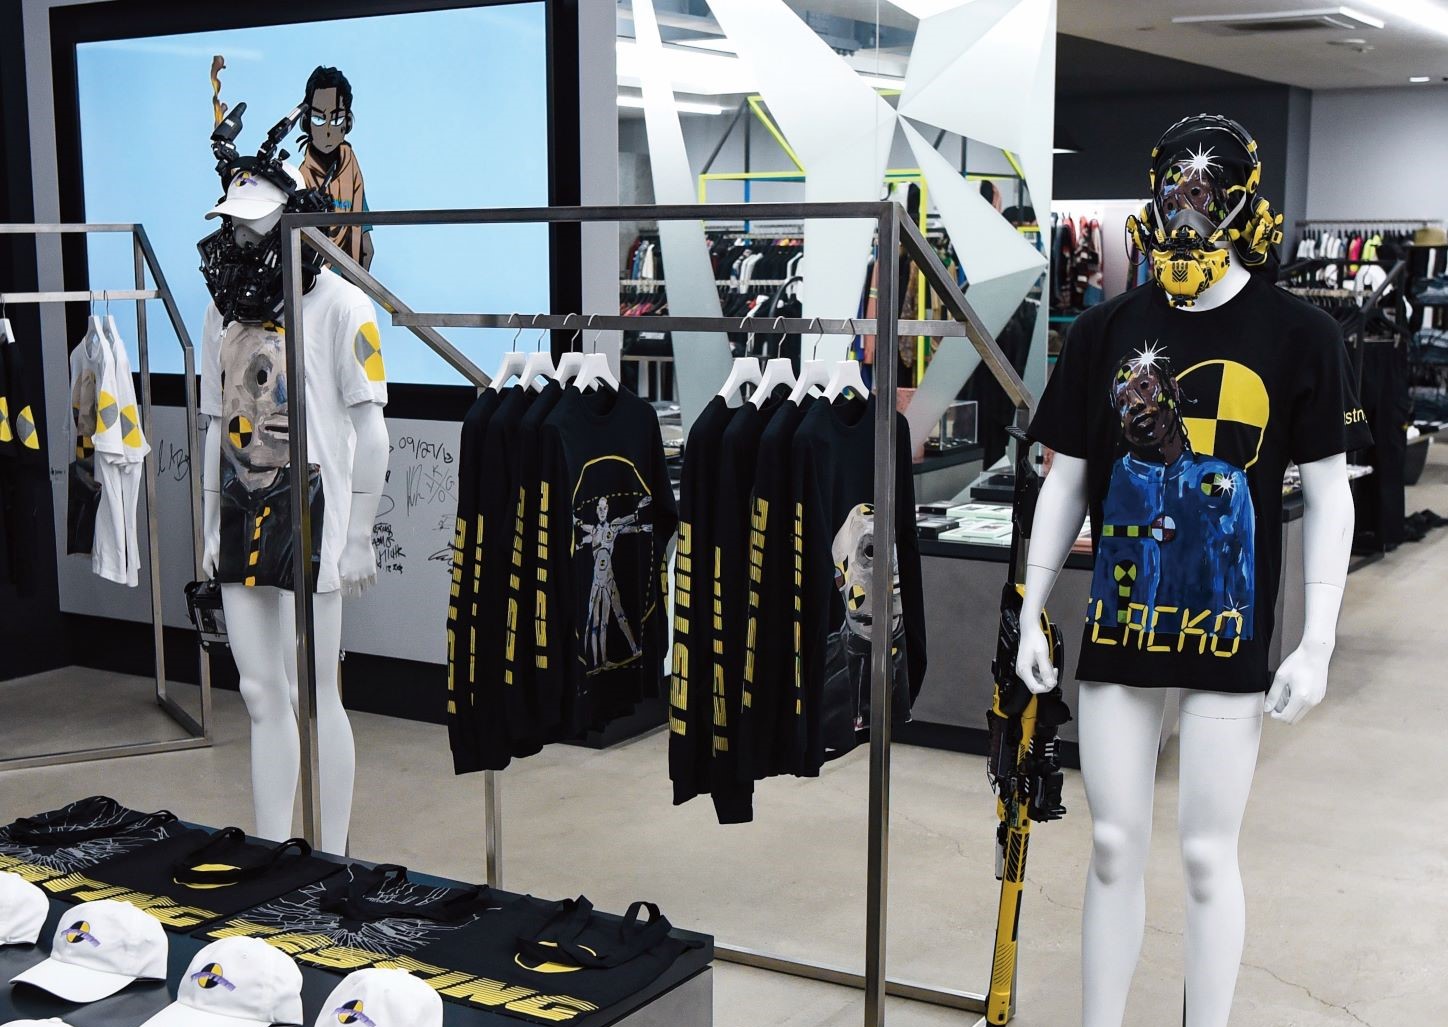 池内启人的作品红遍全球，2019 年饶舌歌手 A$AP Rocky 在日本知名潮流选品店开设专辑周边 Pop-Up 期间限定店铺，就在展示服装的人台上加入了池内启人的面罩作品。